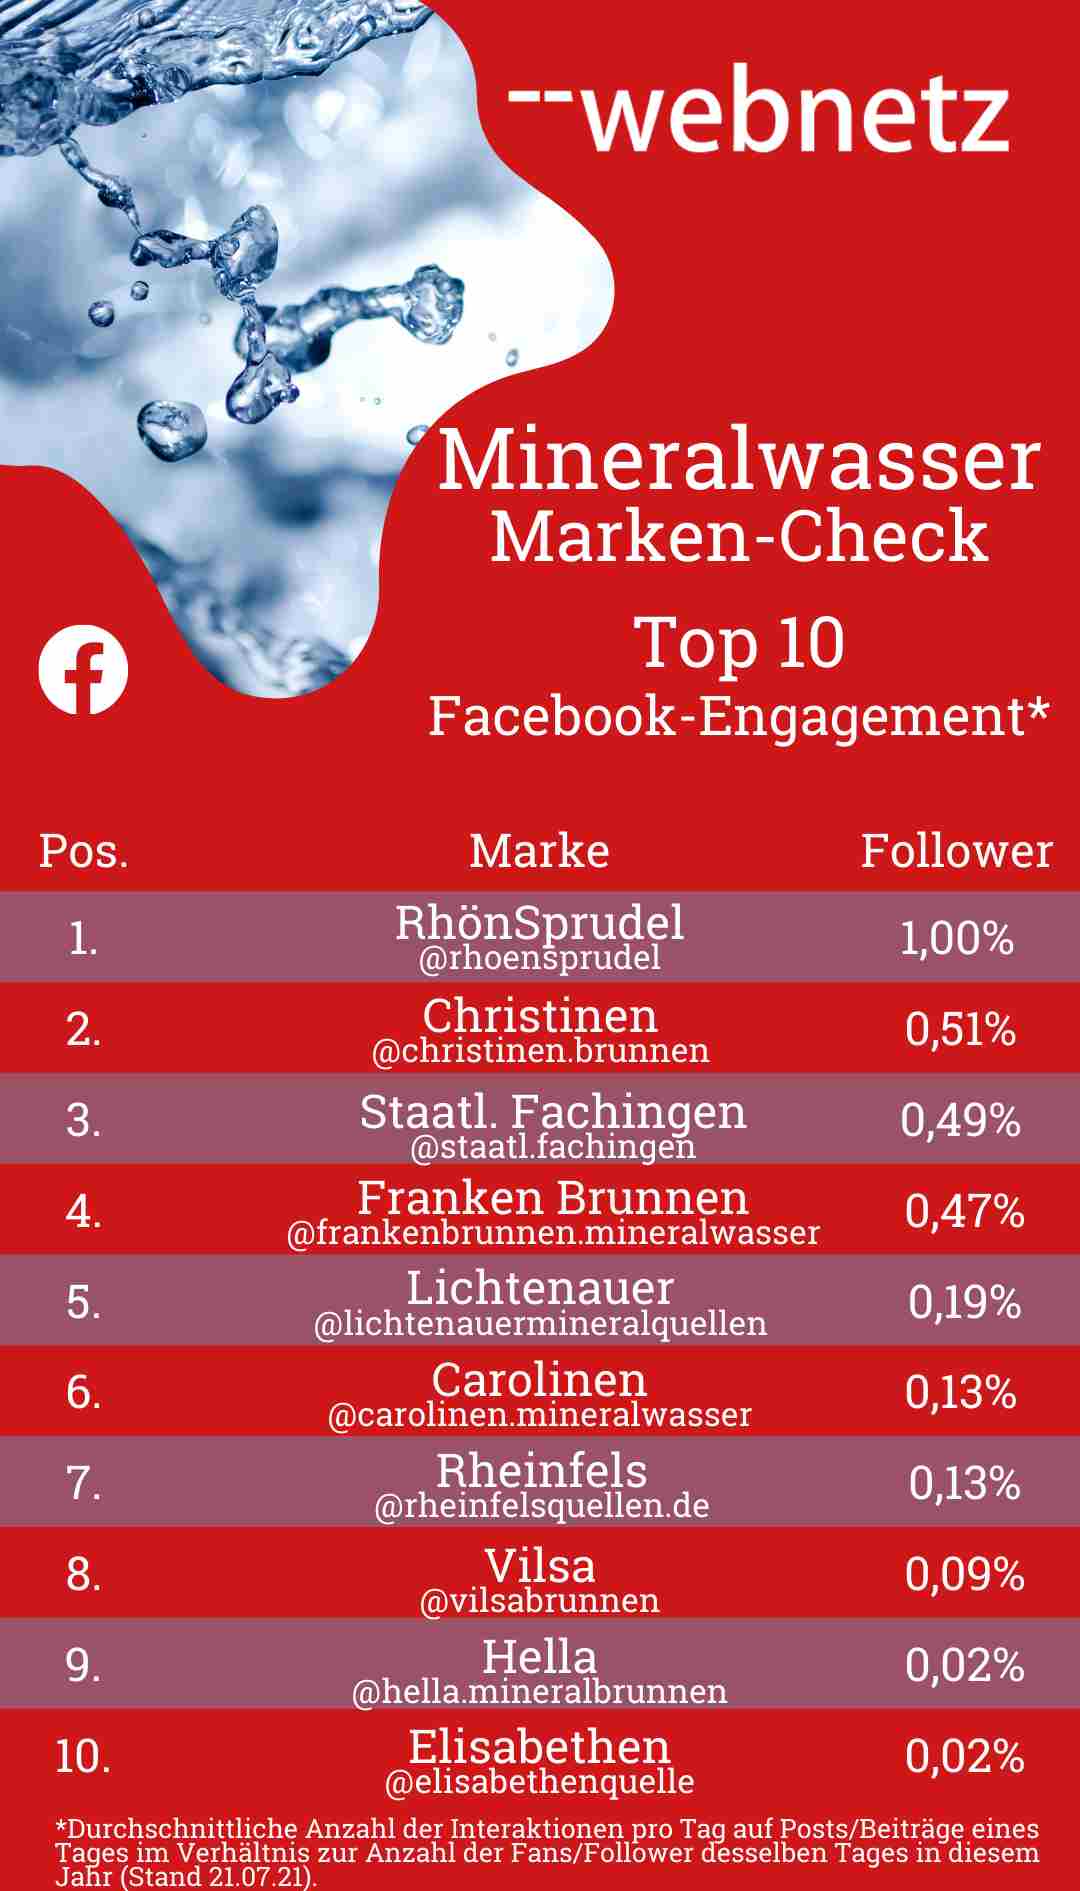 Mineralwasser-Marken Top 10 Facebook-Engagement